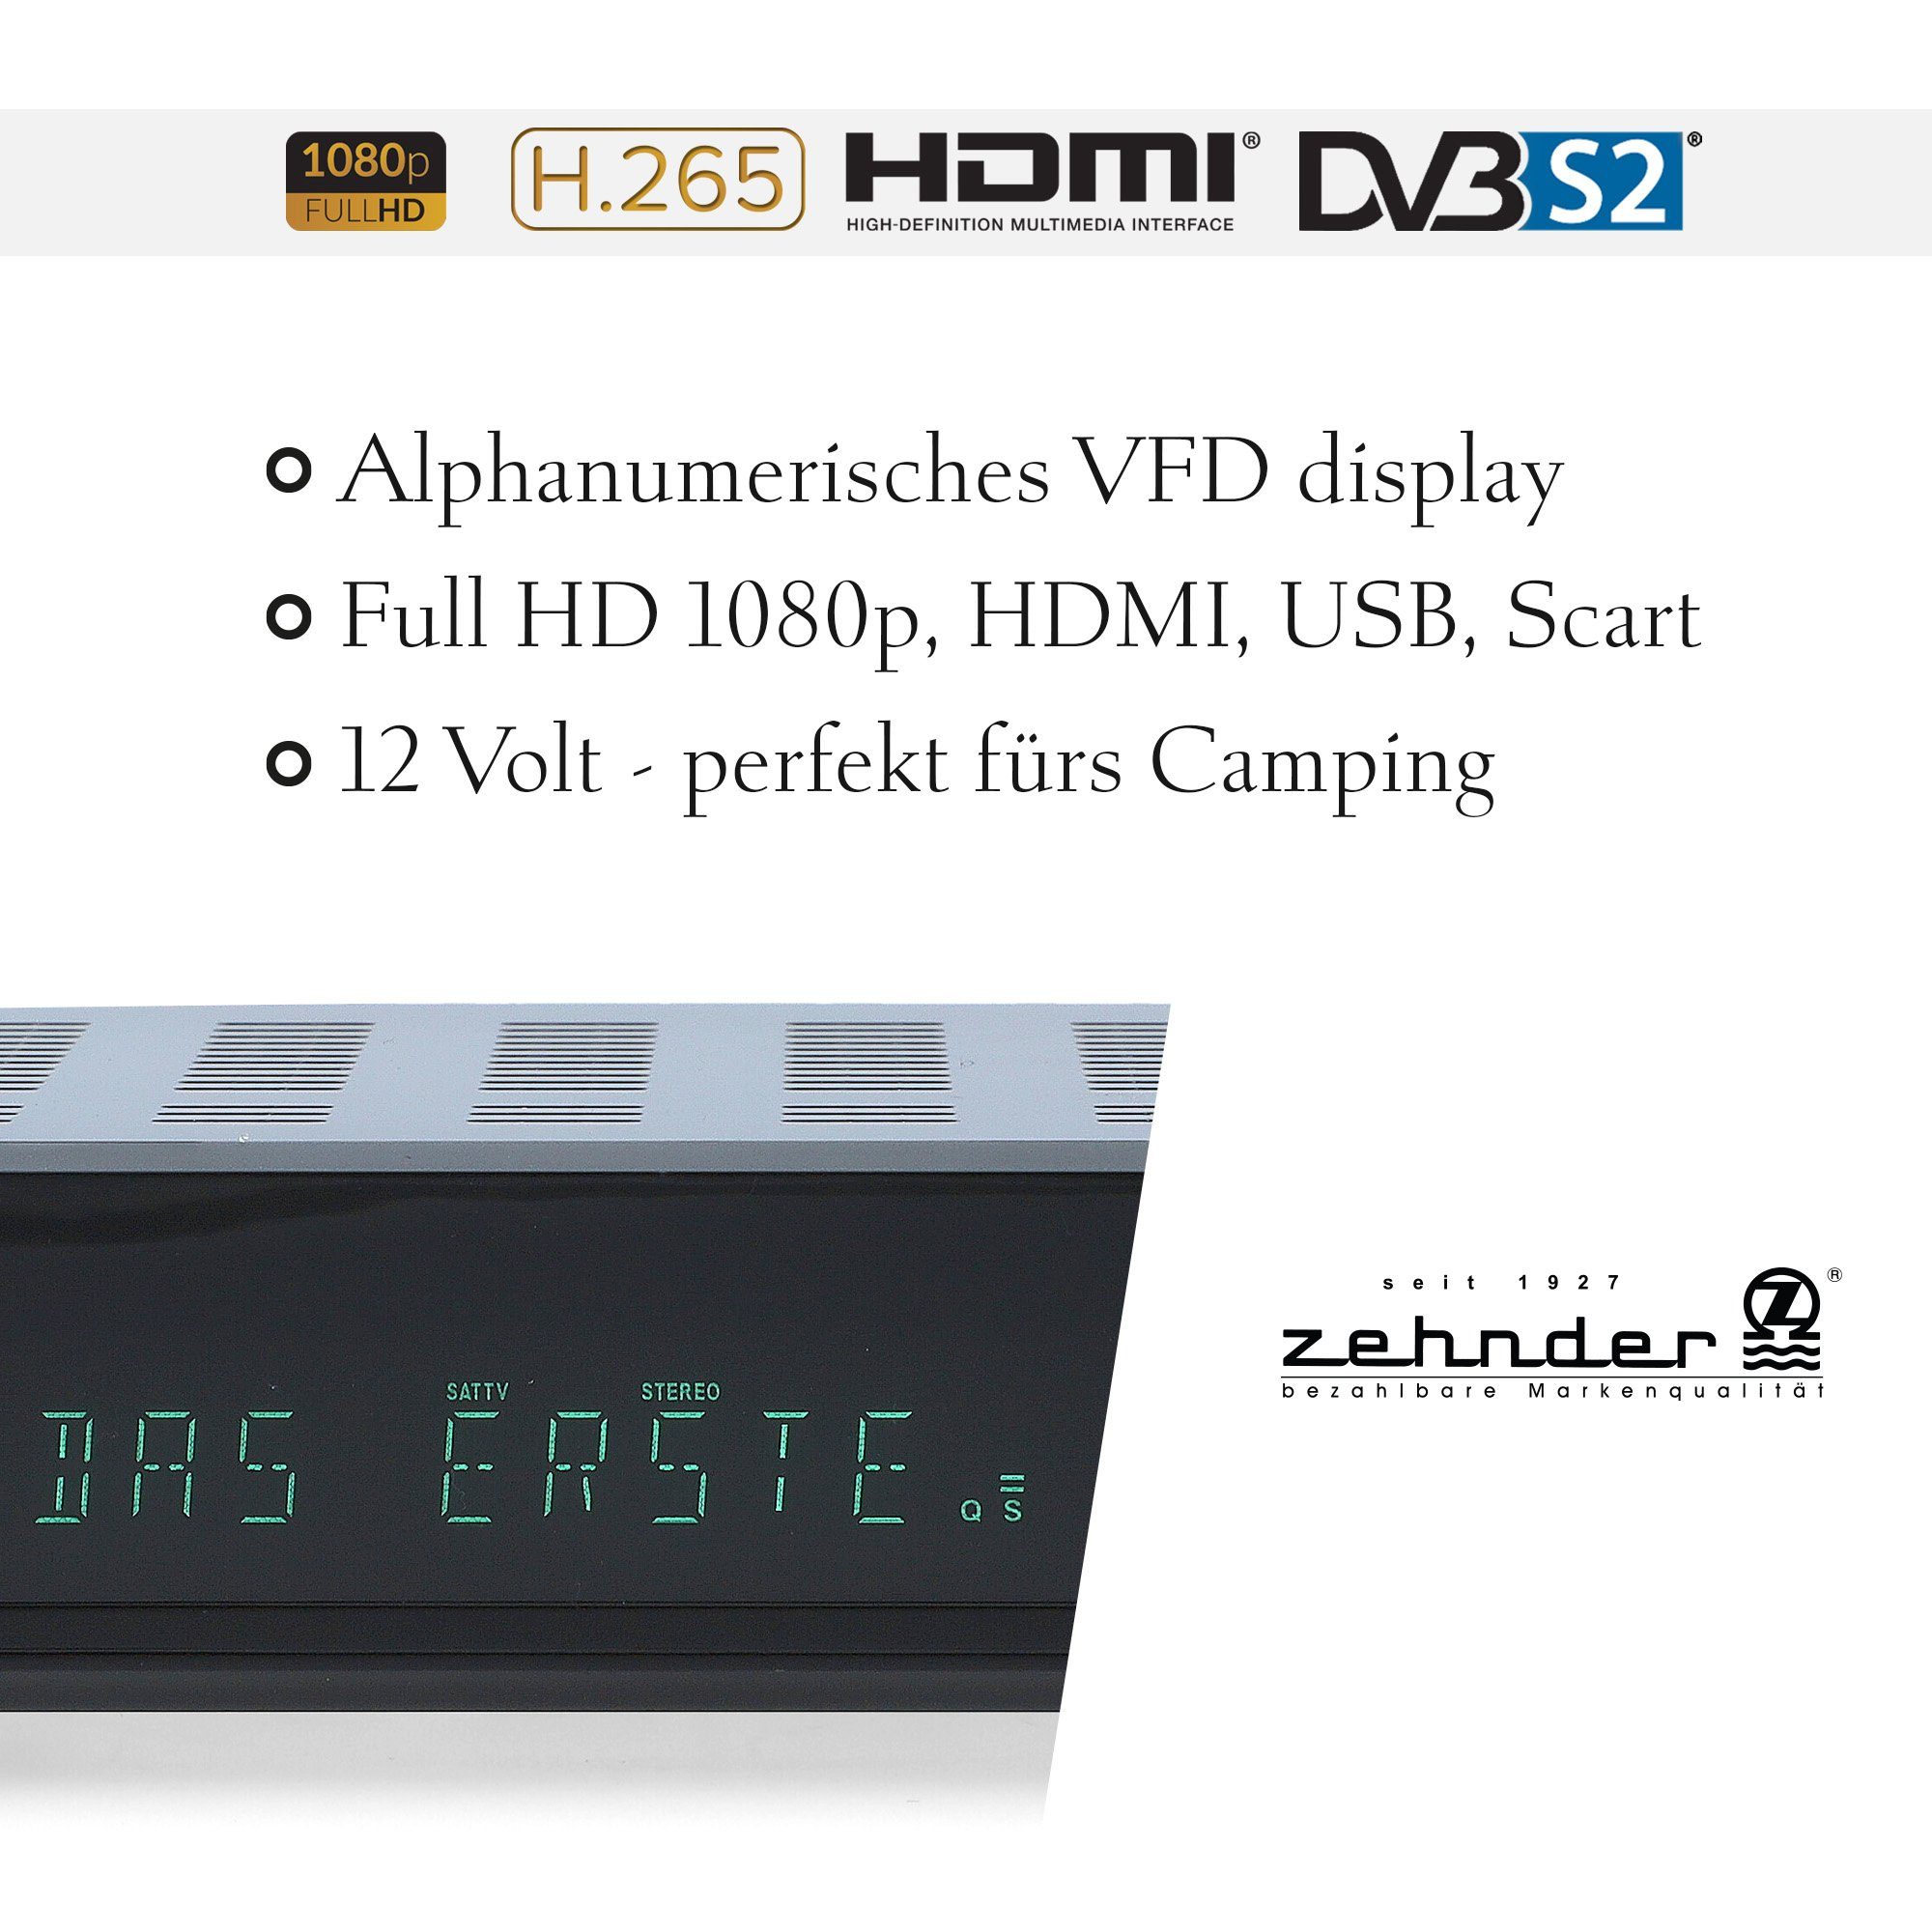 12V PVR, SAT-Receiver Einkabel SCART, Coaxial, HX-2300-Alphanumerisches (AAC-LC, - Display USB, tauglich) HDMI, Zehnder